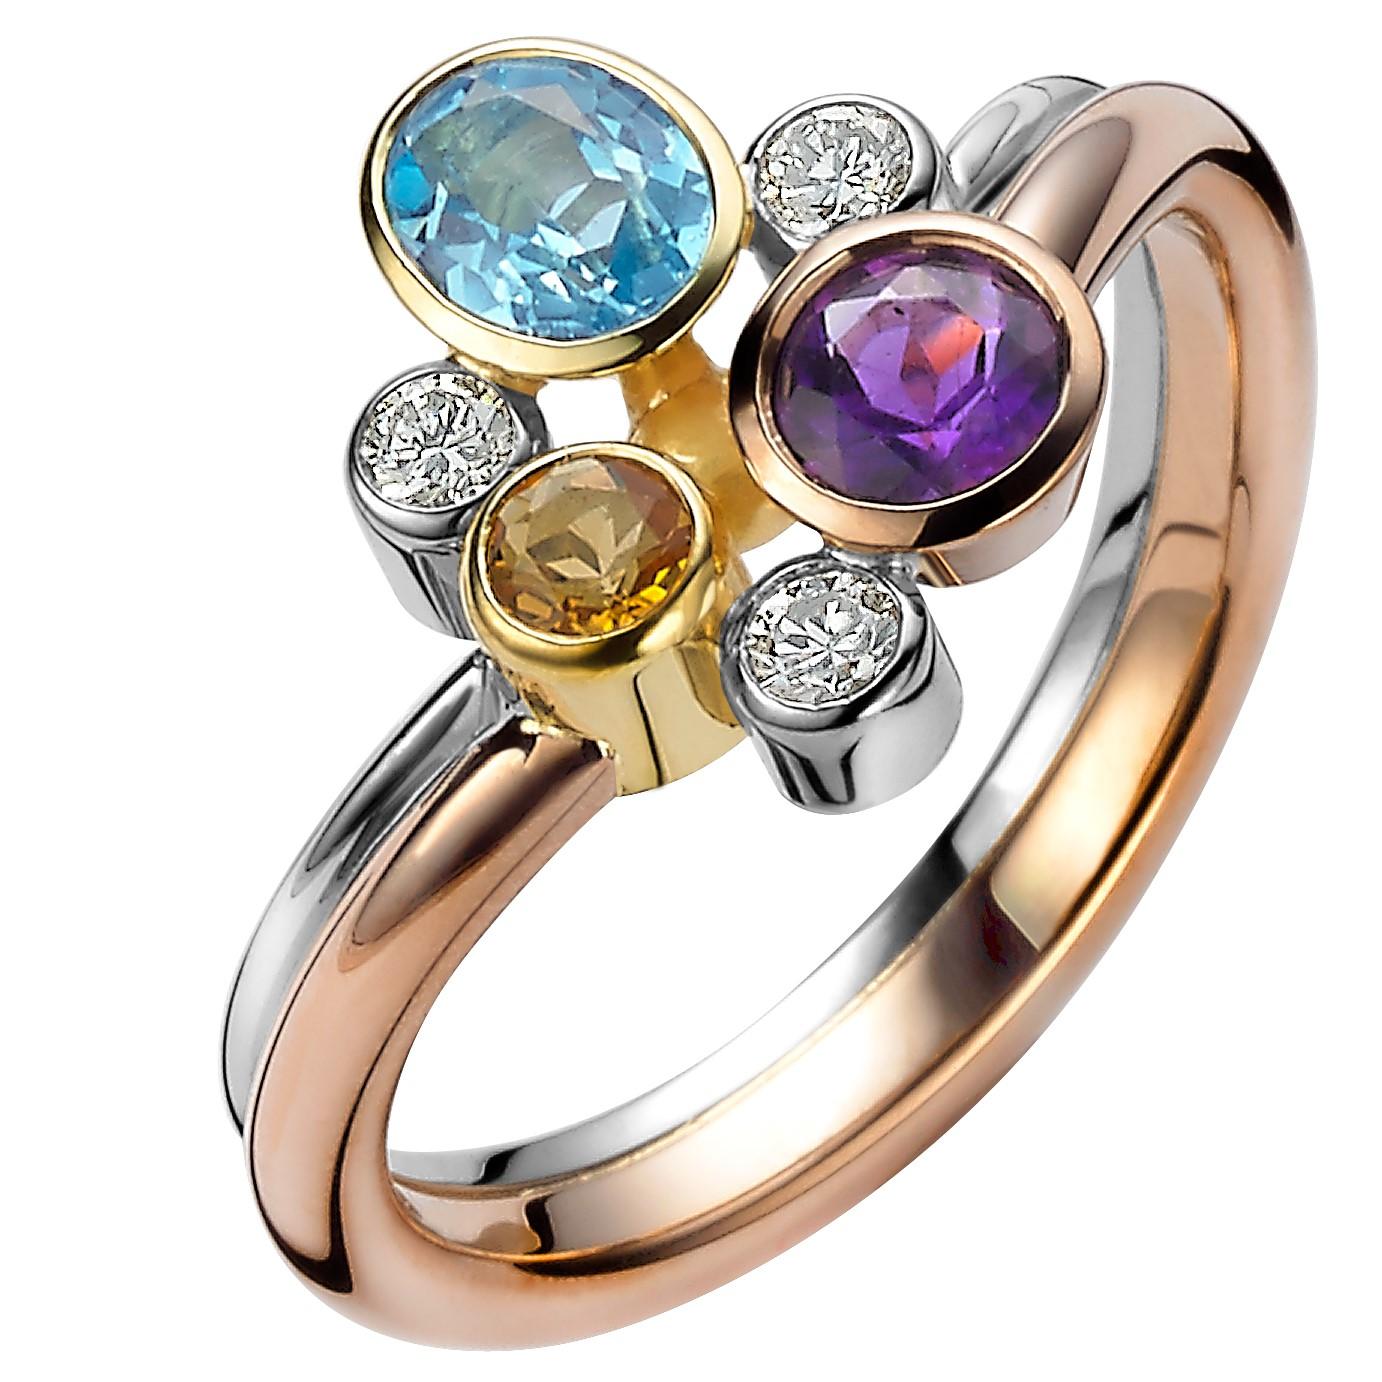 Multicolored Gemstone and Diamond Tutti Frutti Ring For Sale